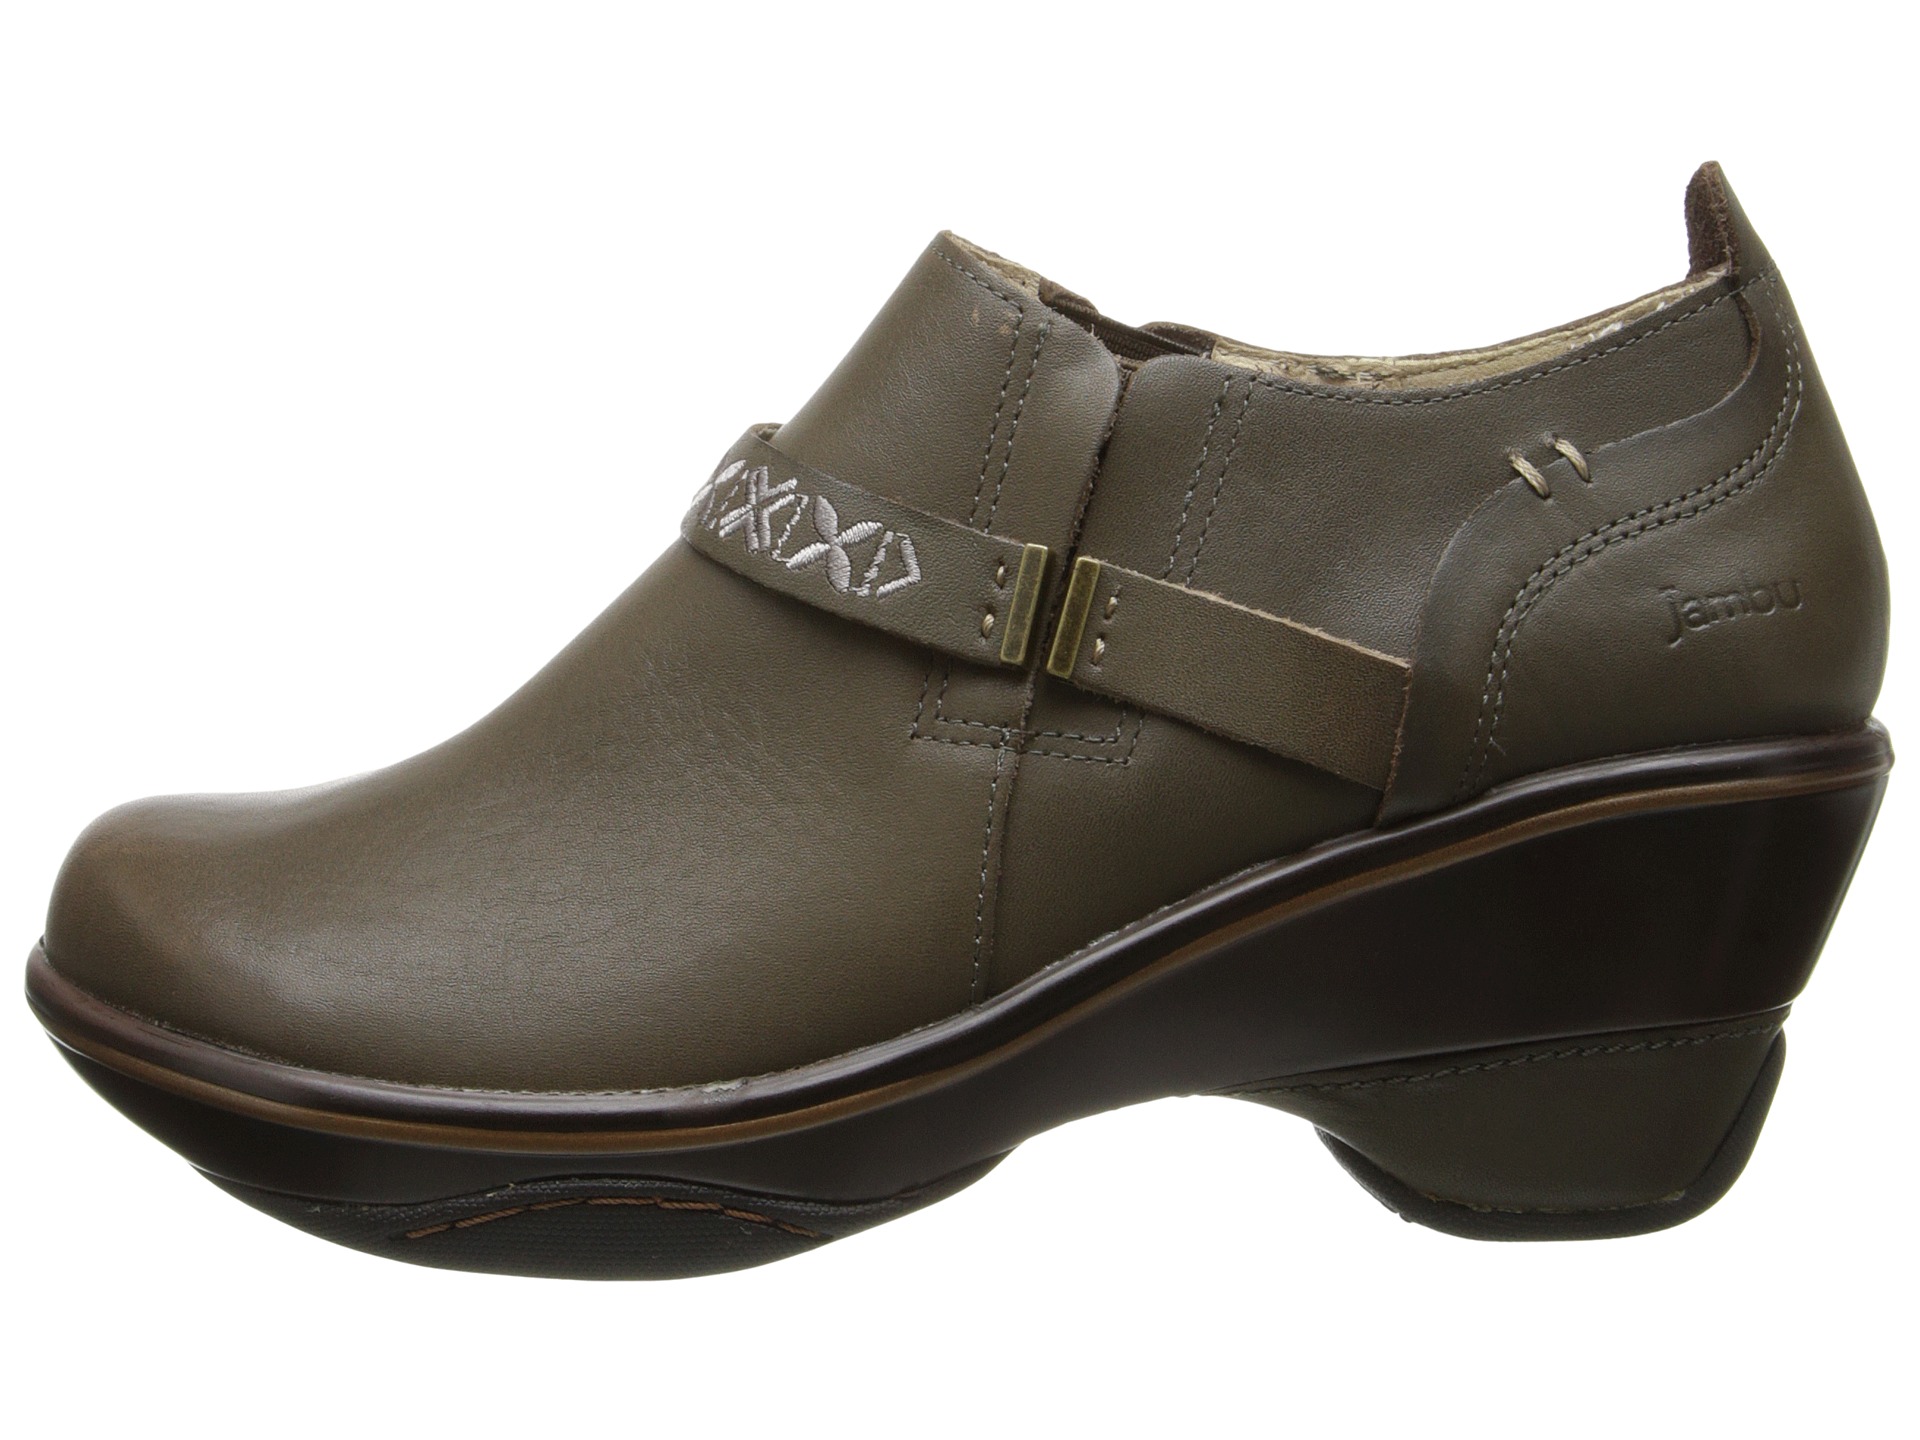 Best Sandals For Plantar Fasciitis: Zappos Jambu